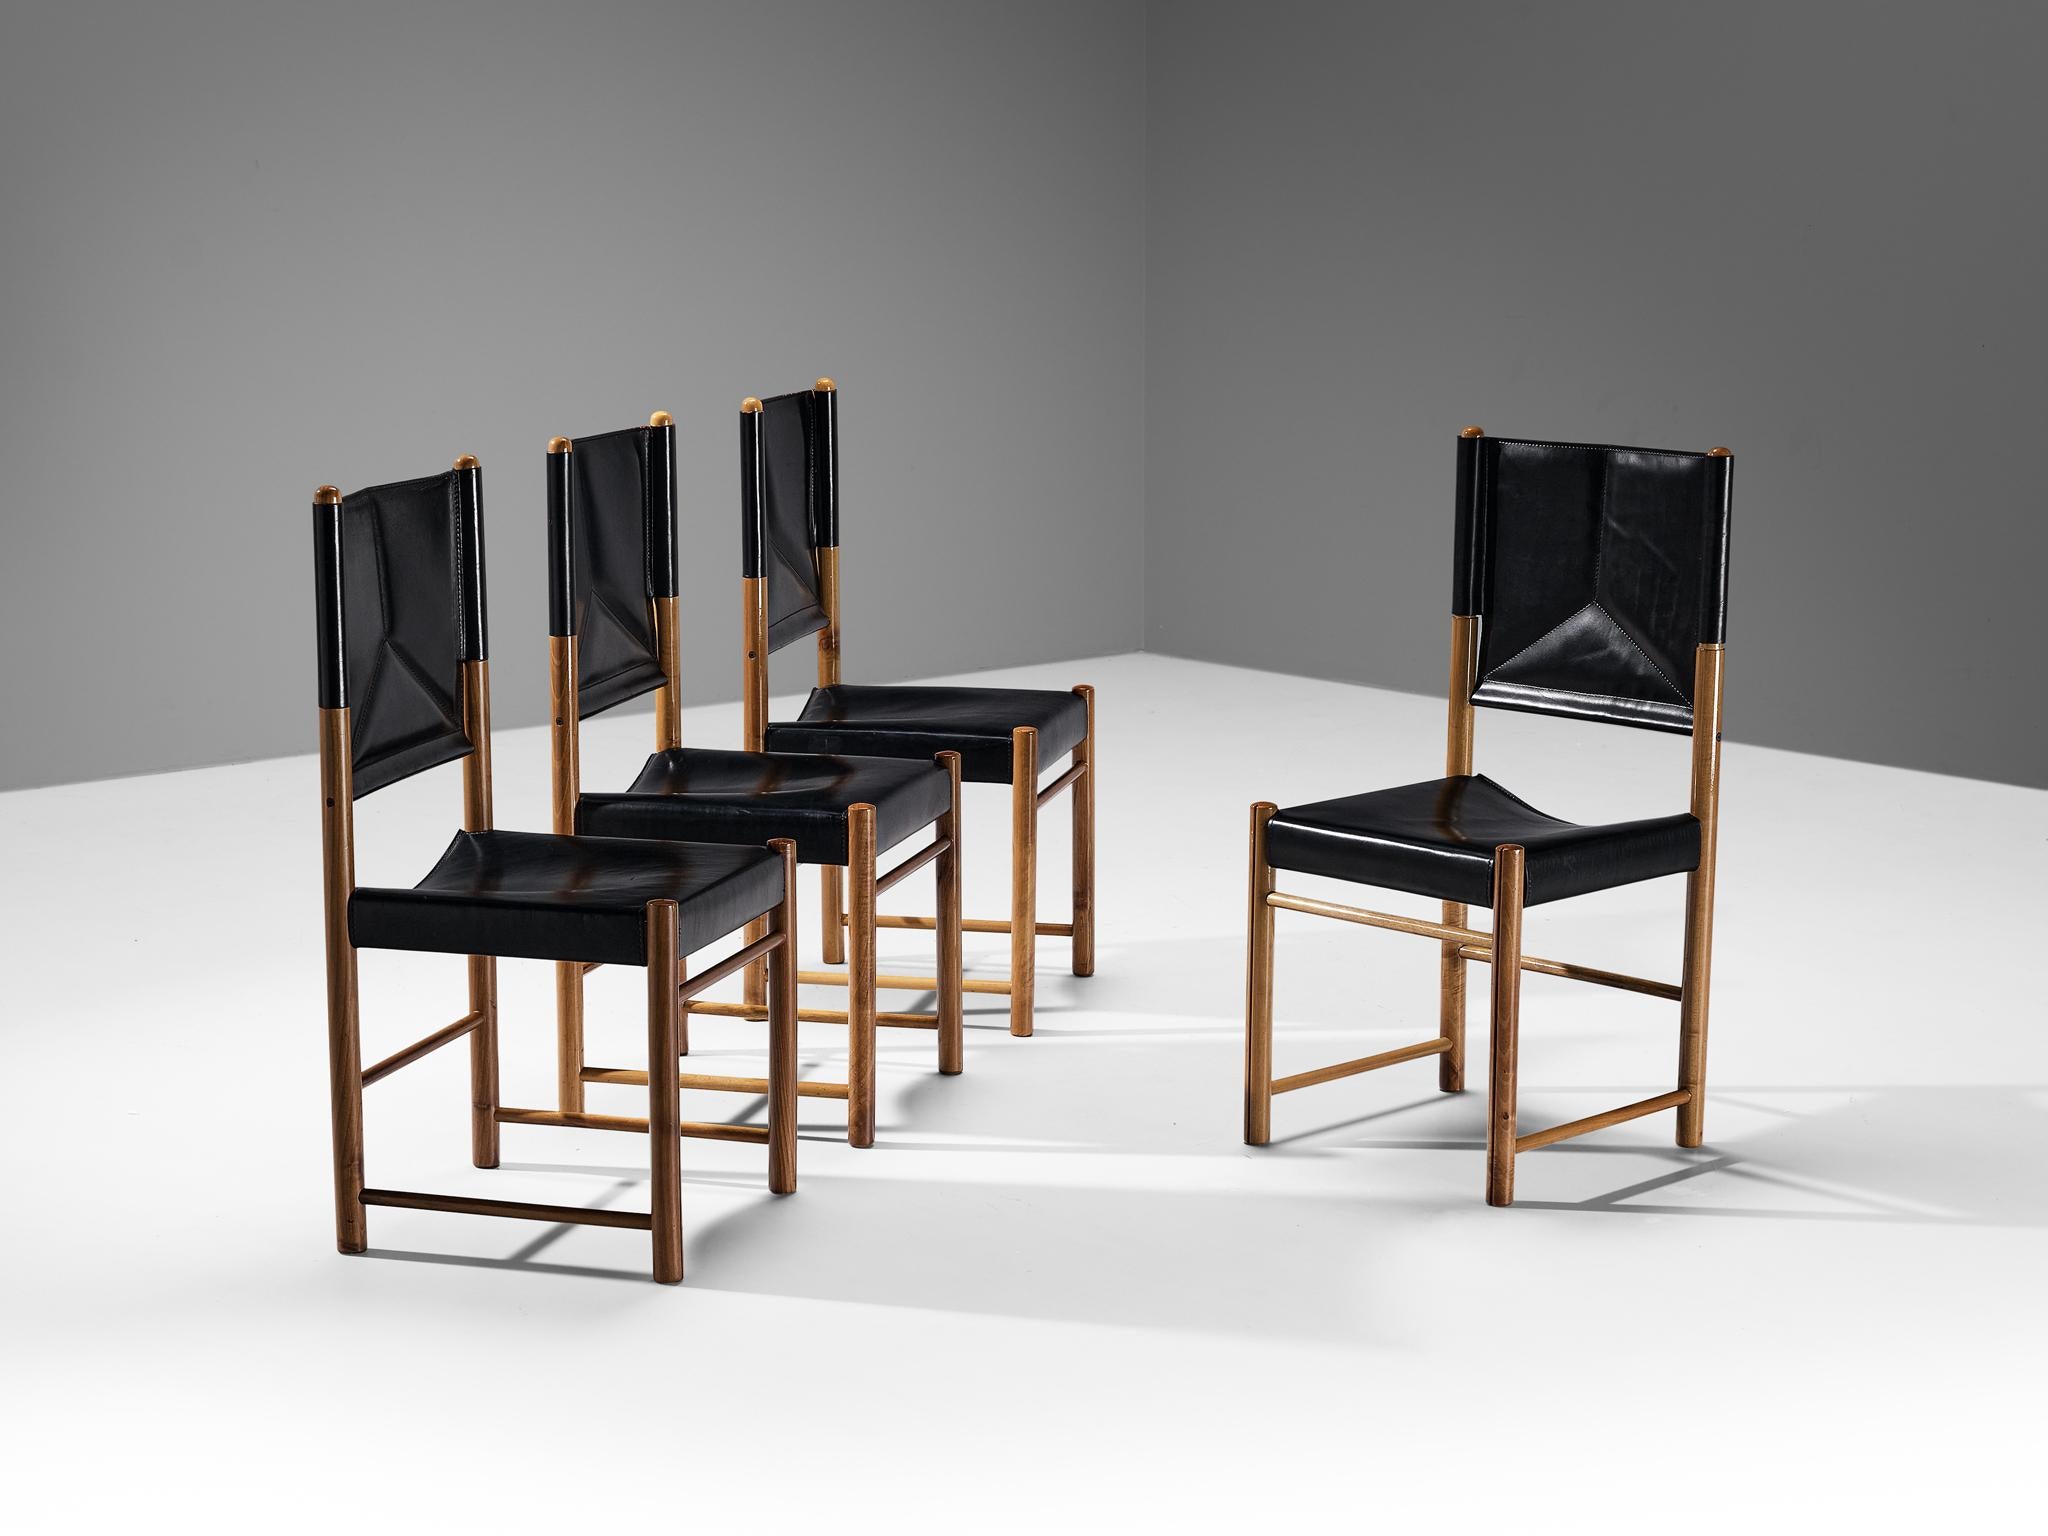 Satz von vier Esszimmerstühlen, Nussbaum, Leder, Italien, 1970er Jahre

Ein zartes Set von Stühlen, die gut proportioniert sind und den Essbereich auf eine kraftvolle und starke Weise aufwerten. Der Holzrahmen besteht aus zylindrischen Balken, an